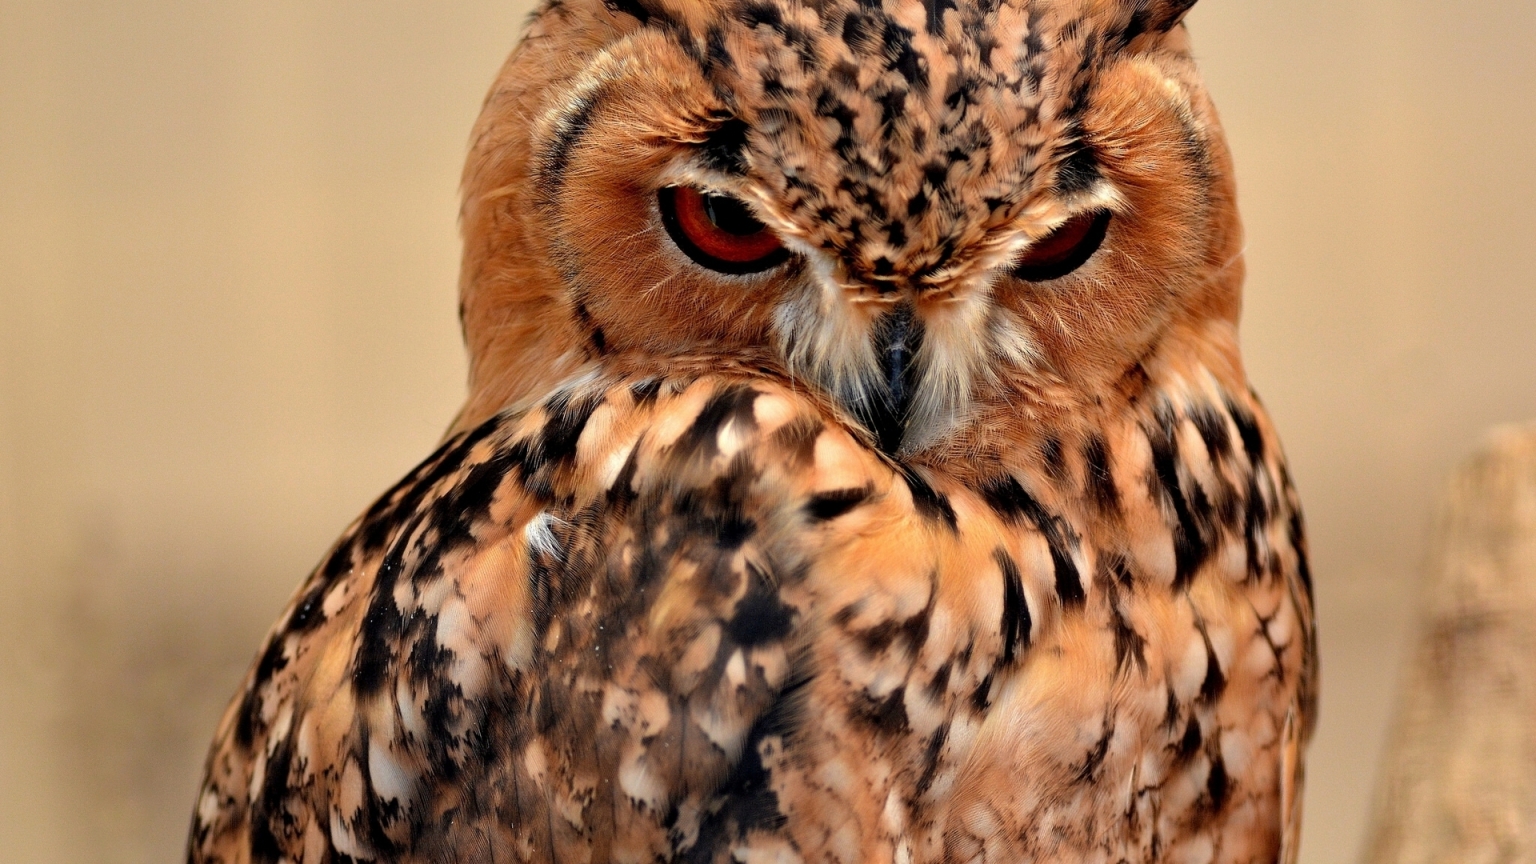 Desert Eagle Owl for 1536 x 864 HDTV resolution